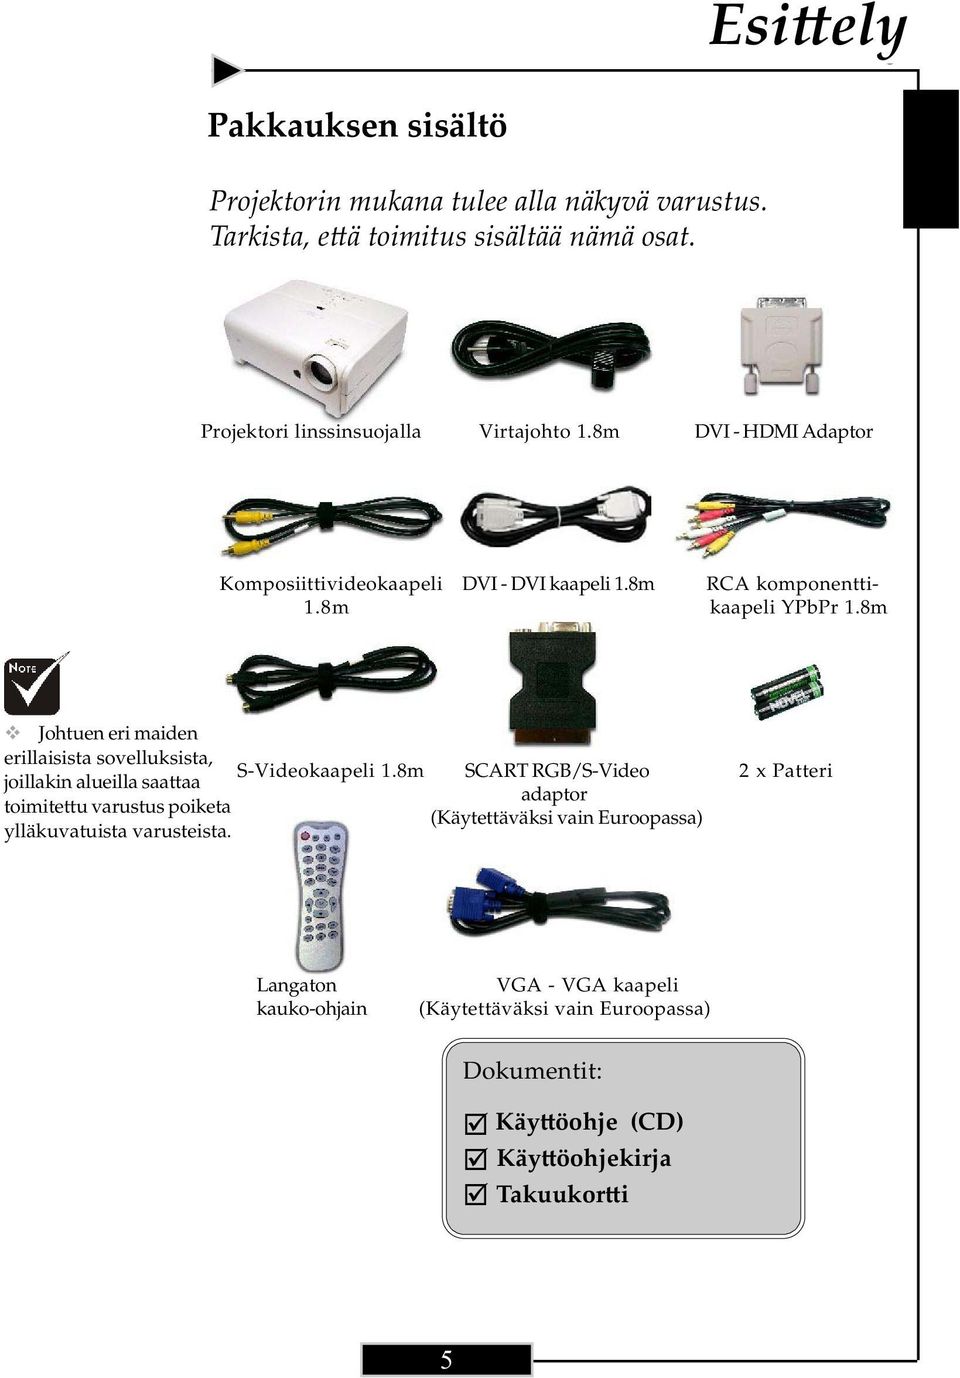 8m DVI - HDMI Adaptor Komposiittivideokaapeli 1.8m DVI - DVI kaapeli 1.8m RCA komponenttikaapeli YPbPr 1.8m Johtuen eri maiden erillaisista sovelluksista, S-Videokaapeli 1.